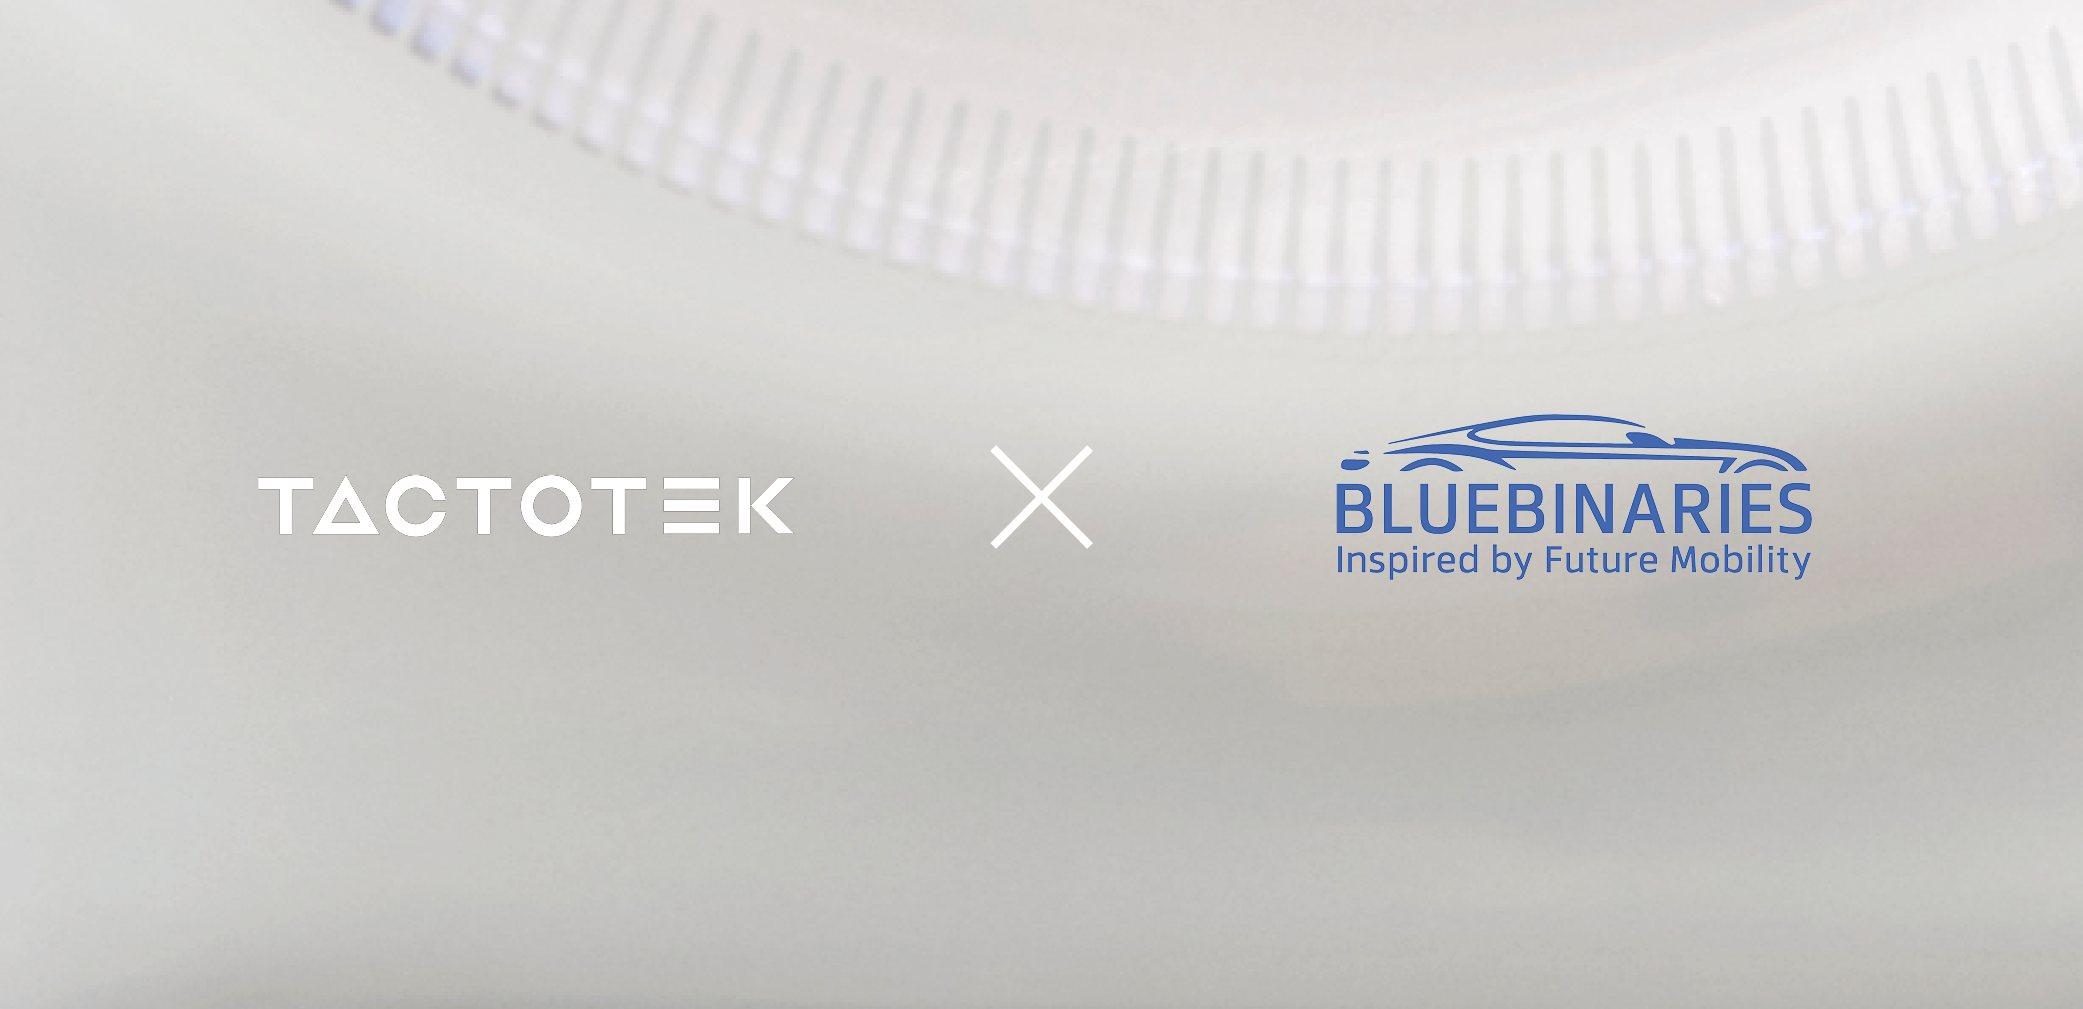 TactoTek and BlueBinaries logos